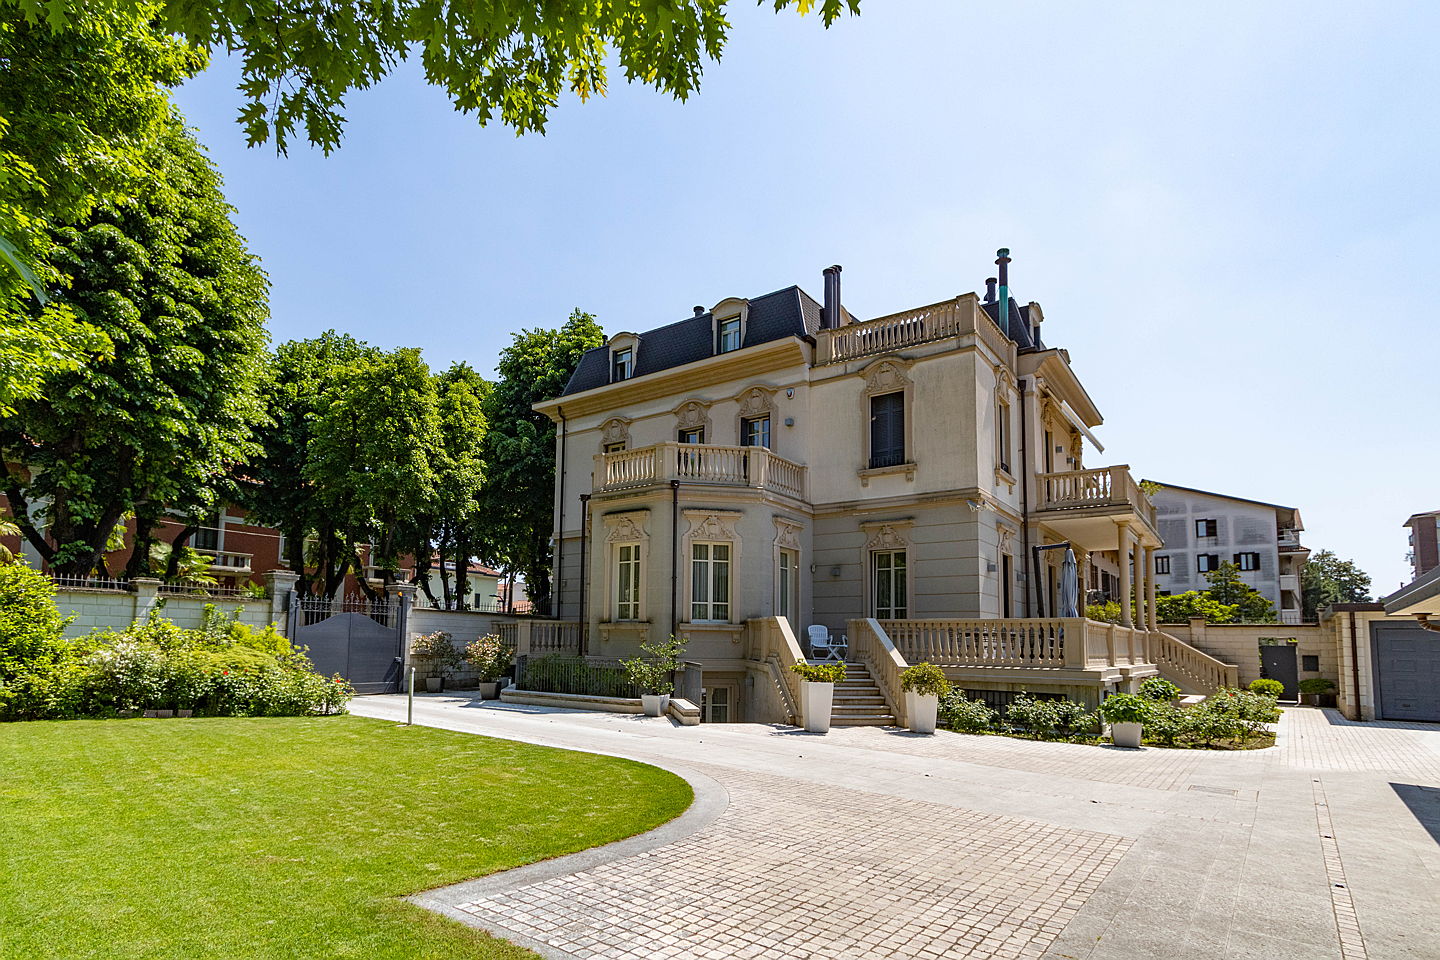  Varese
- splendida villa liberty